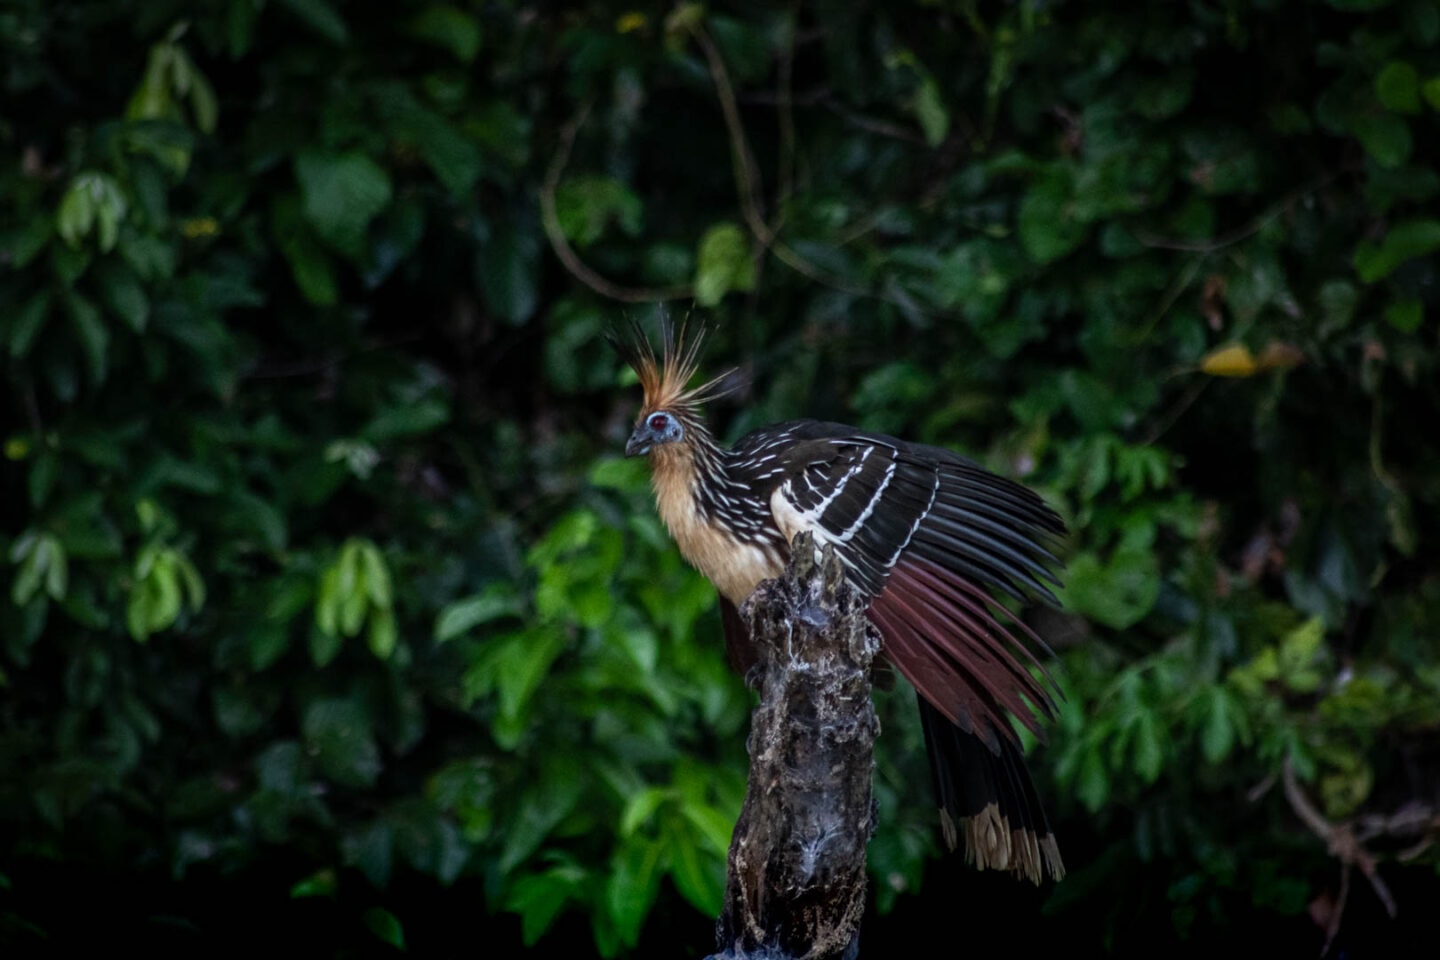 Stinky bird at Sandoval Lake, Peru